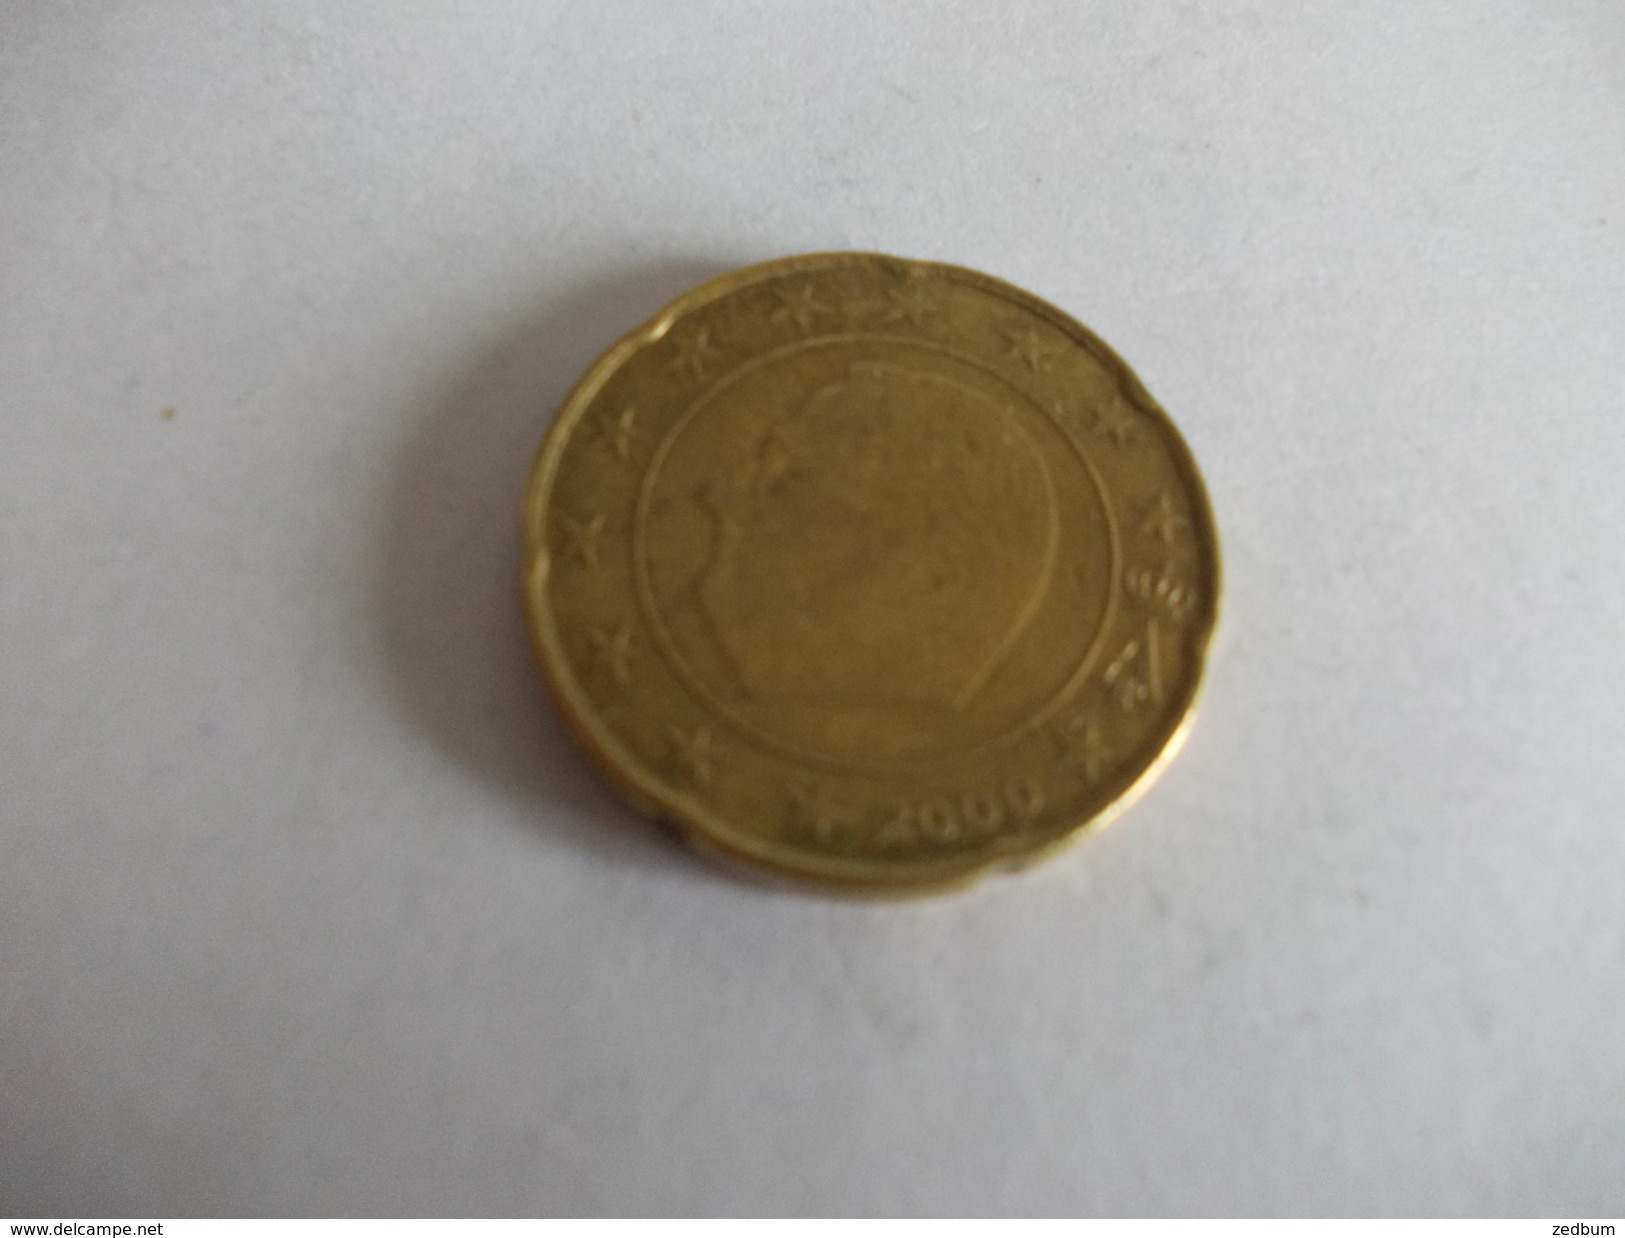 Monnaie Pièce De 20 Centimes D' Euro De Belgique Année 2000 Valeur Argus 1 &euro; - België